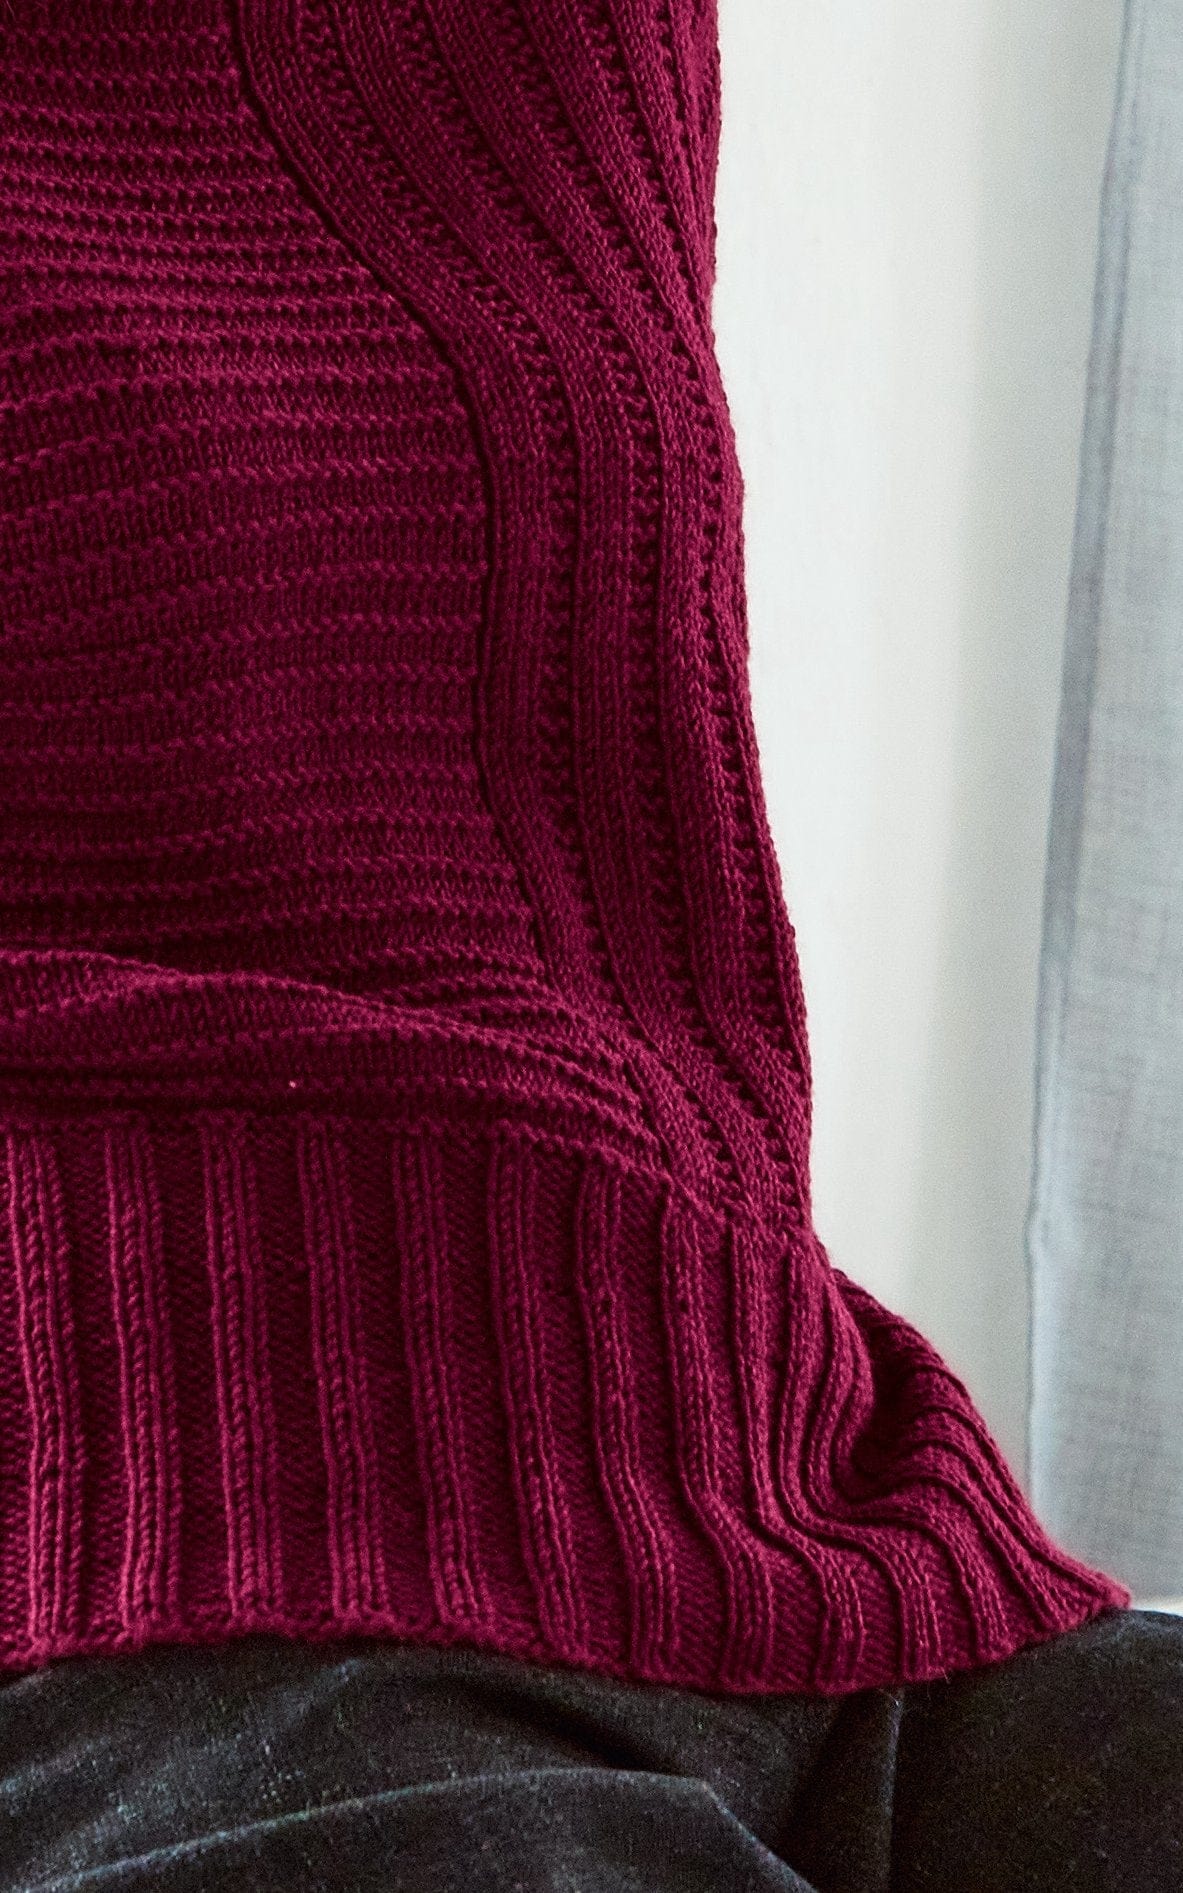 Pullover mit Längs- und Querrrippen - COOL WOOL BIG - Strickset von LANA GROSSA jetzt online kaufen bei OONIQUE